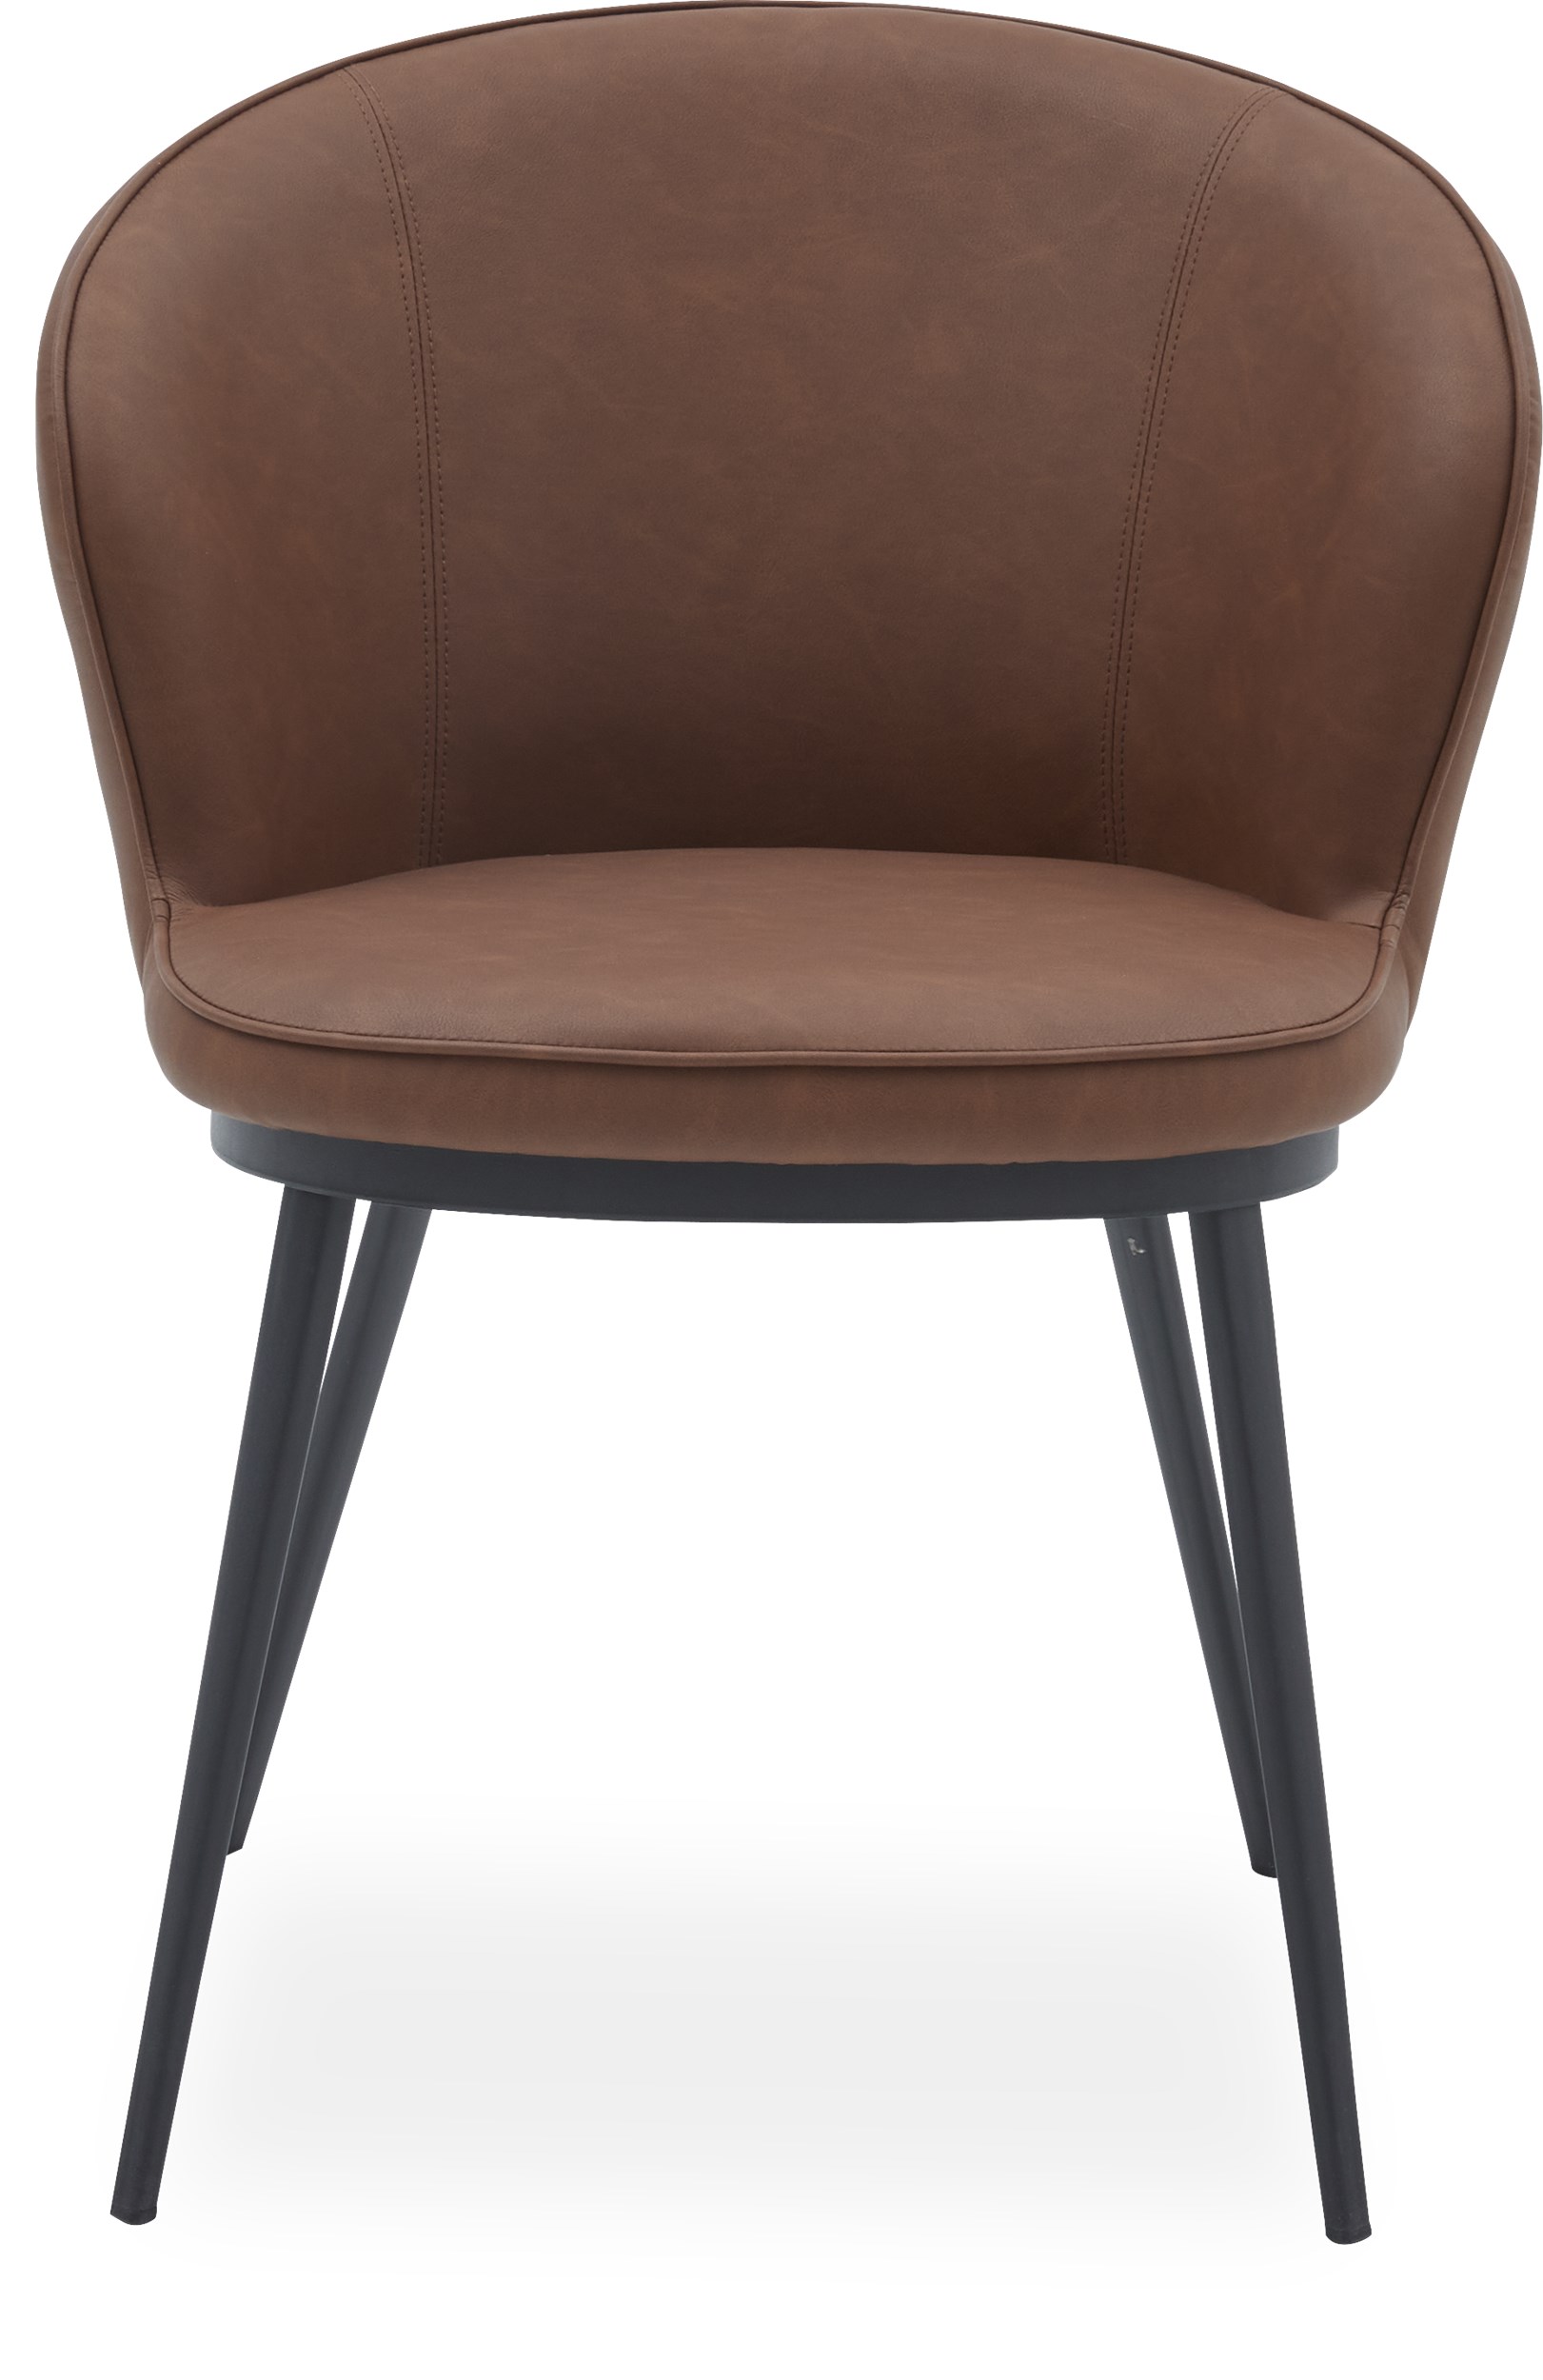 Gain Spisebordsstol - sæde i cognacfarvet kunstlæder og ben i sort pulverlakeret metal